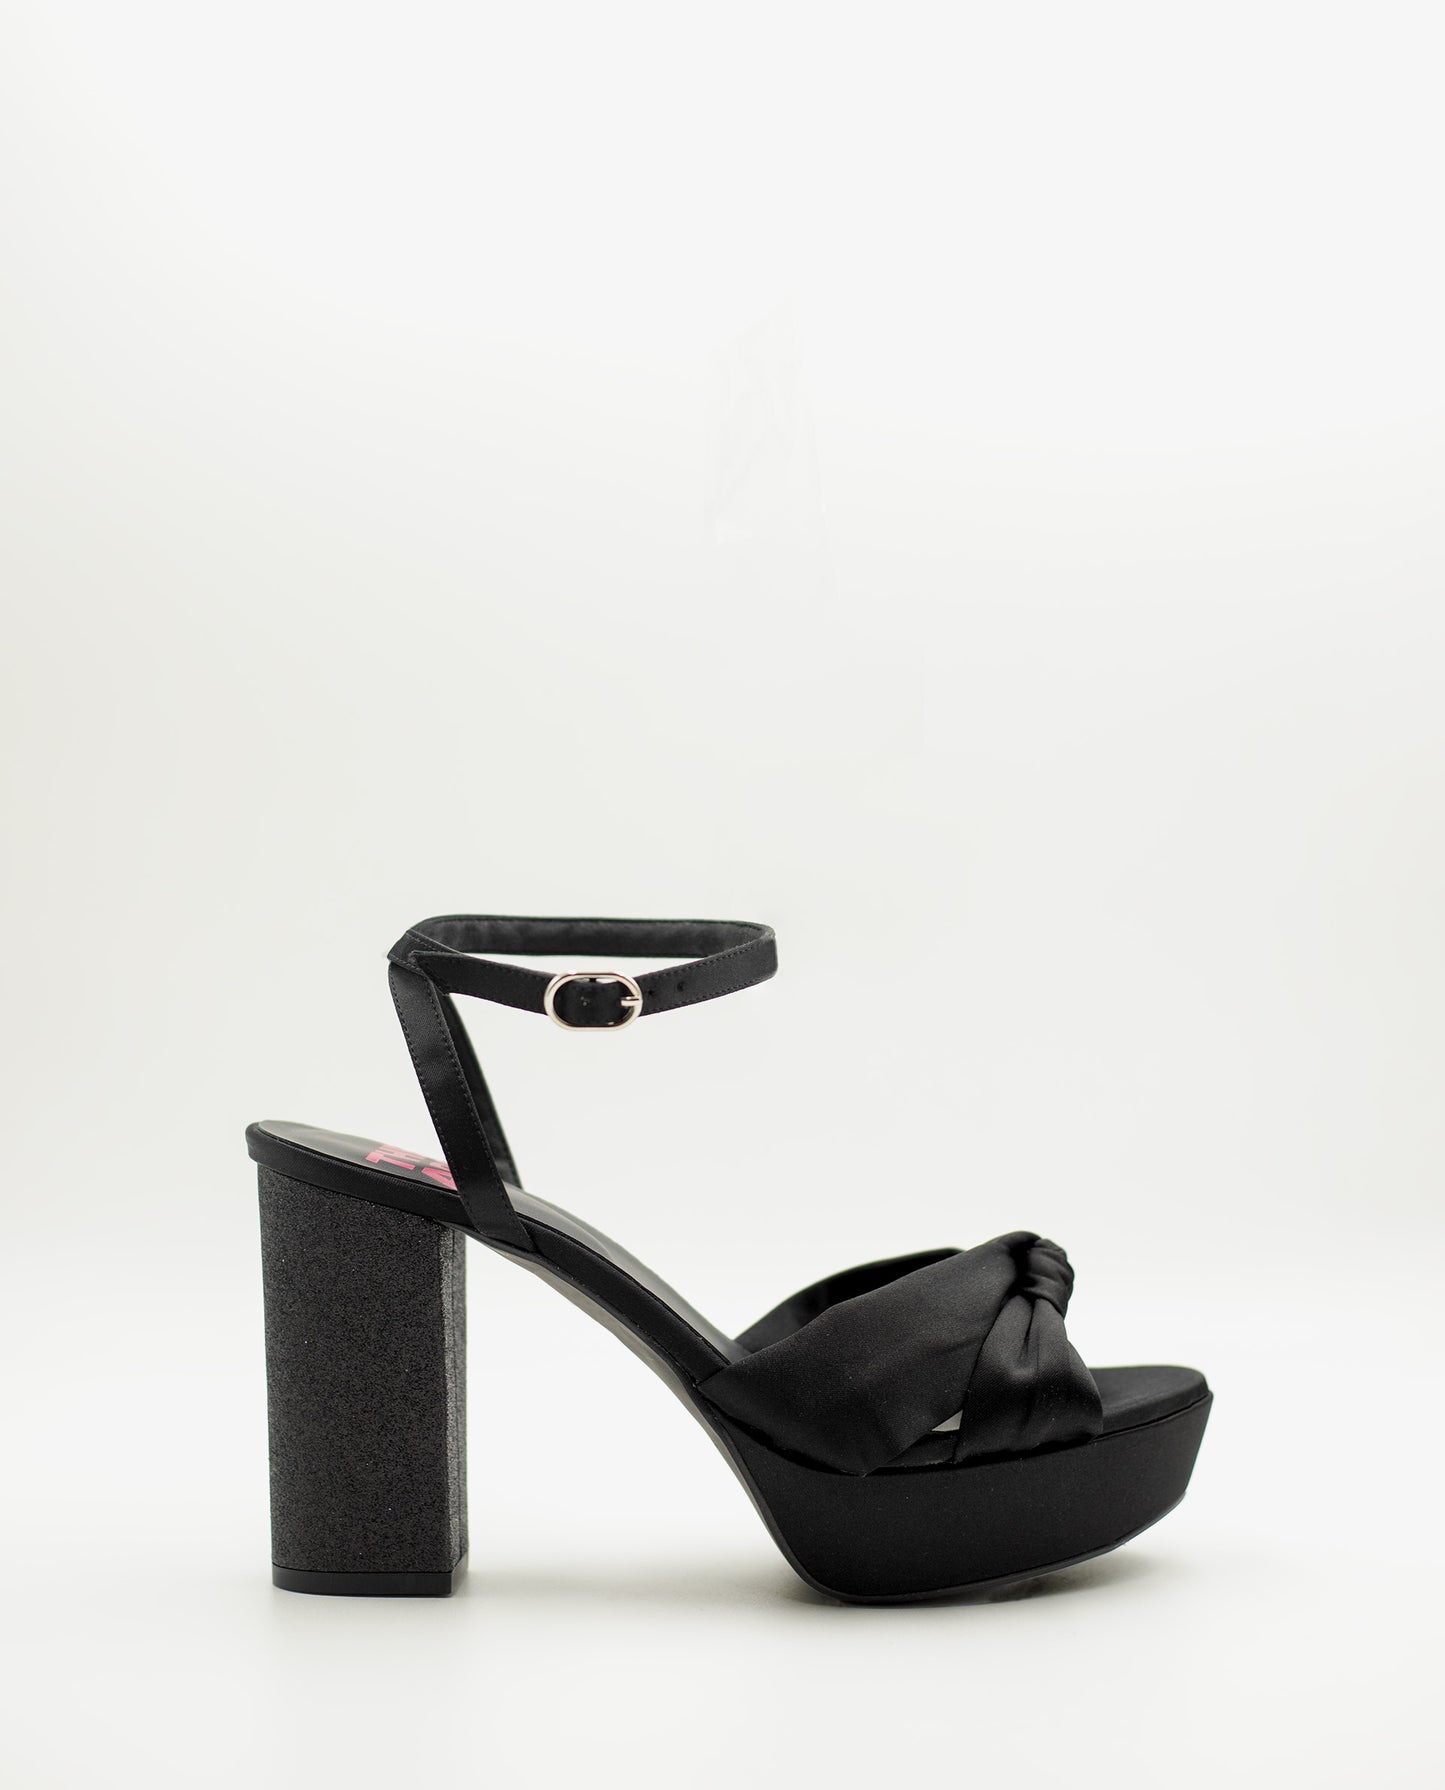 SANDALIA #6 | Sandalia de Tacón Negro con Brillo y Plataforma | Zapatos THE-ARE